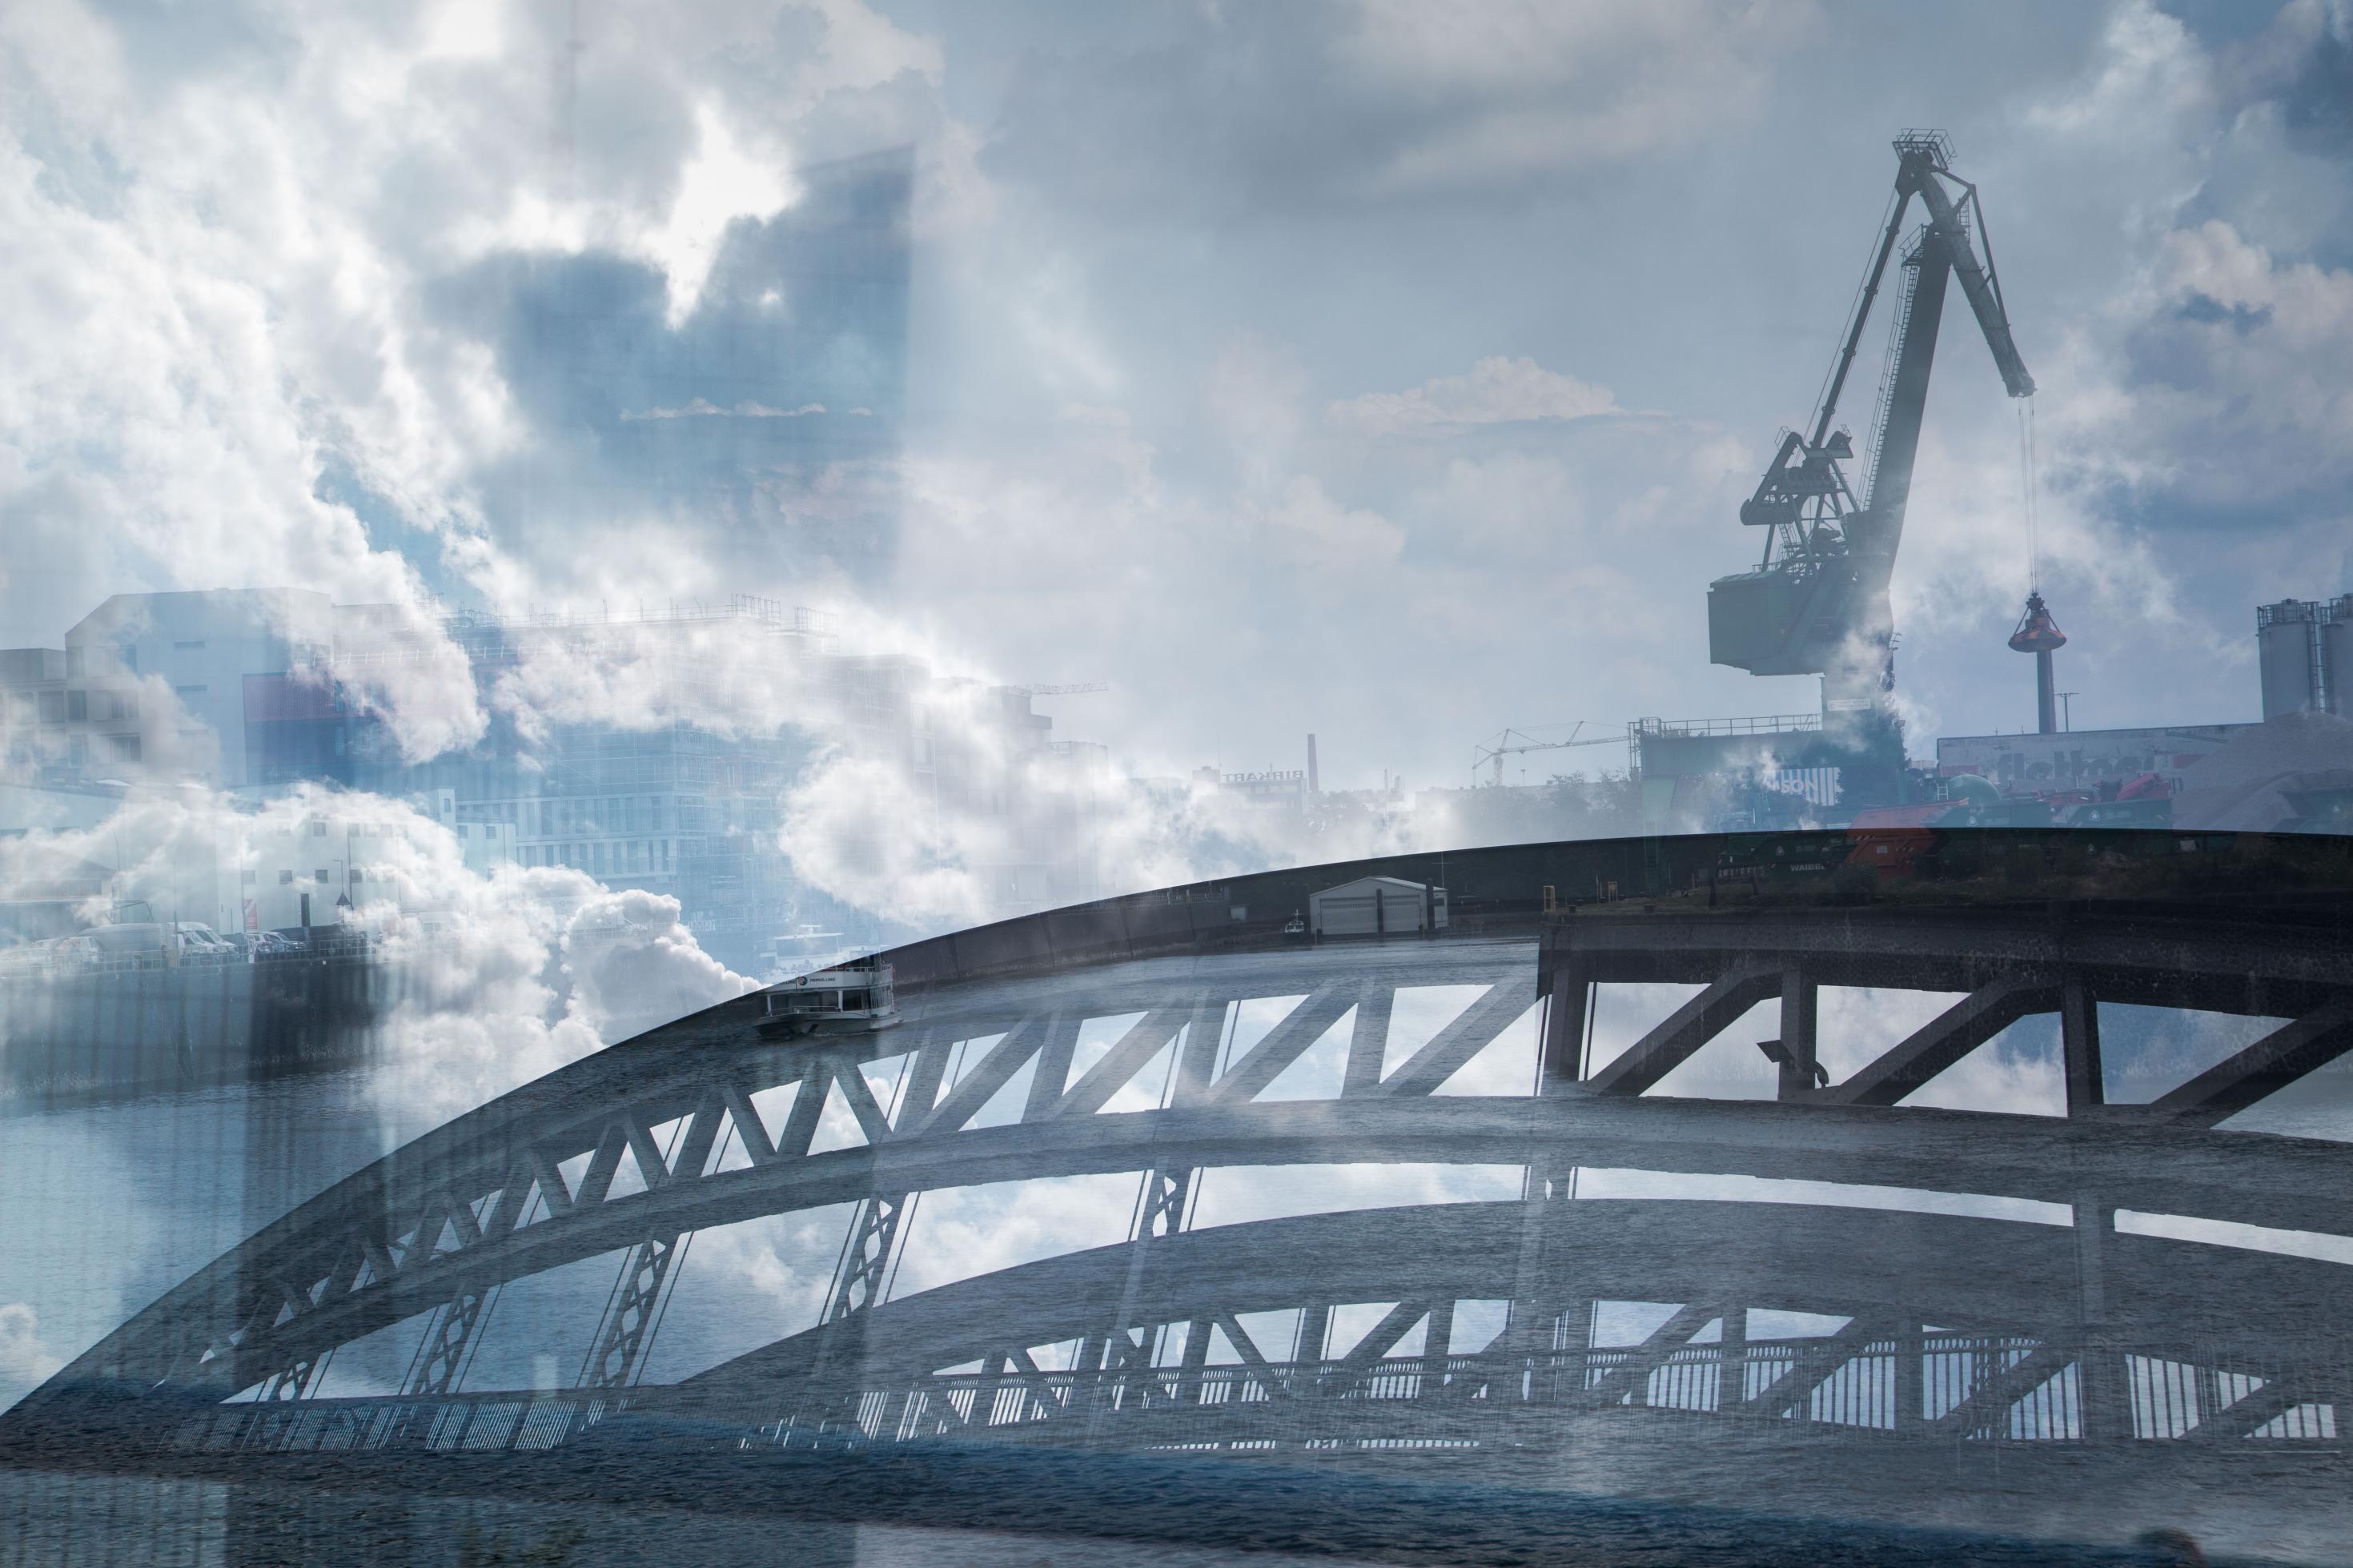 Der Fotokünstler El Rolé hat den Osthafen in Frankfurt am Main fotografiert. Zu sehen sind ein Container-Kran und eine Brücke.